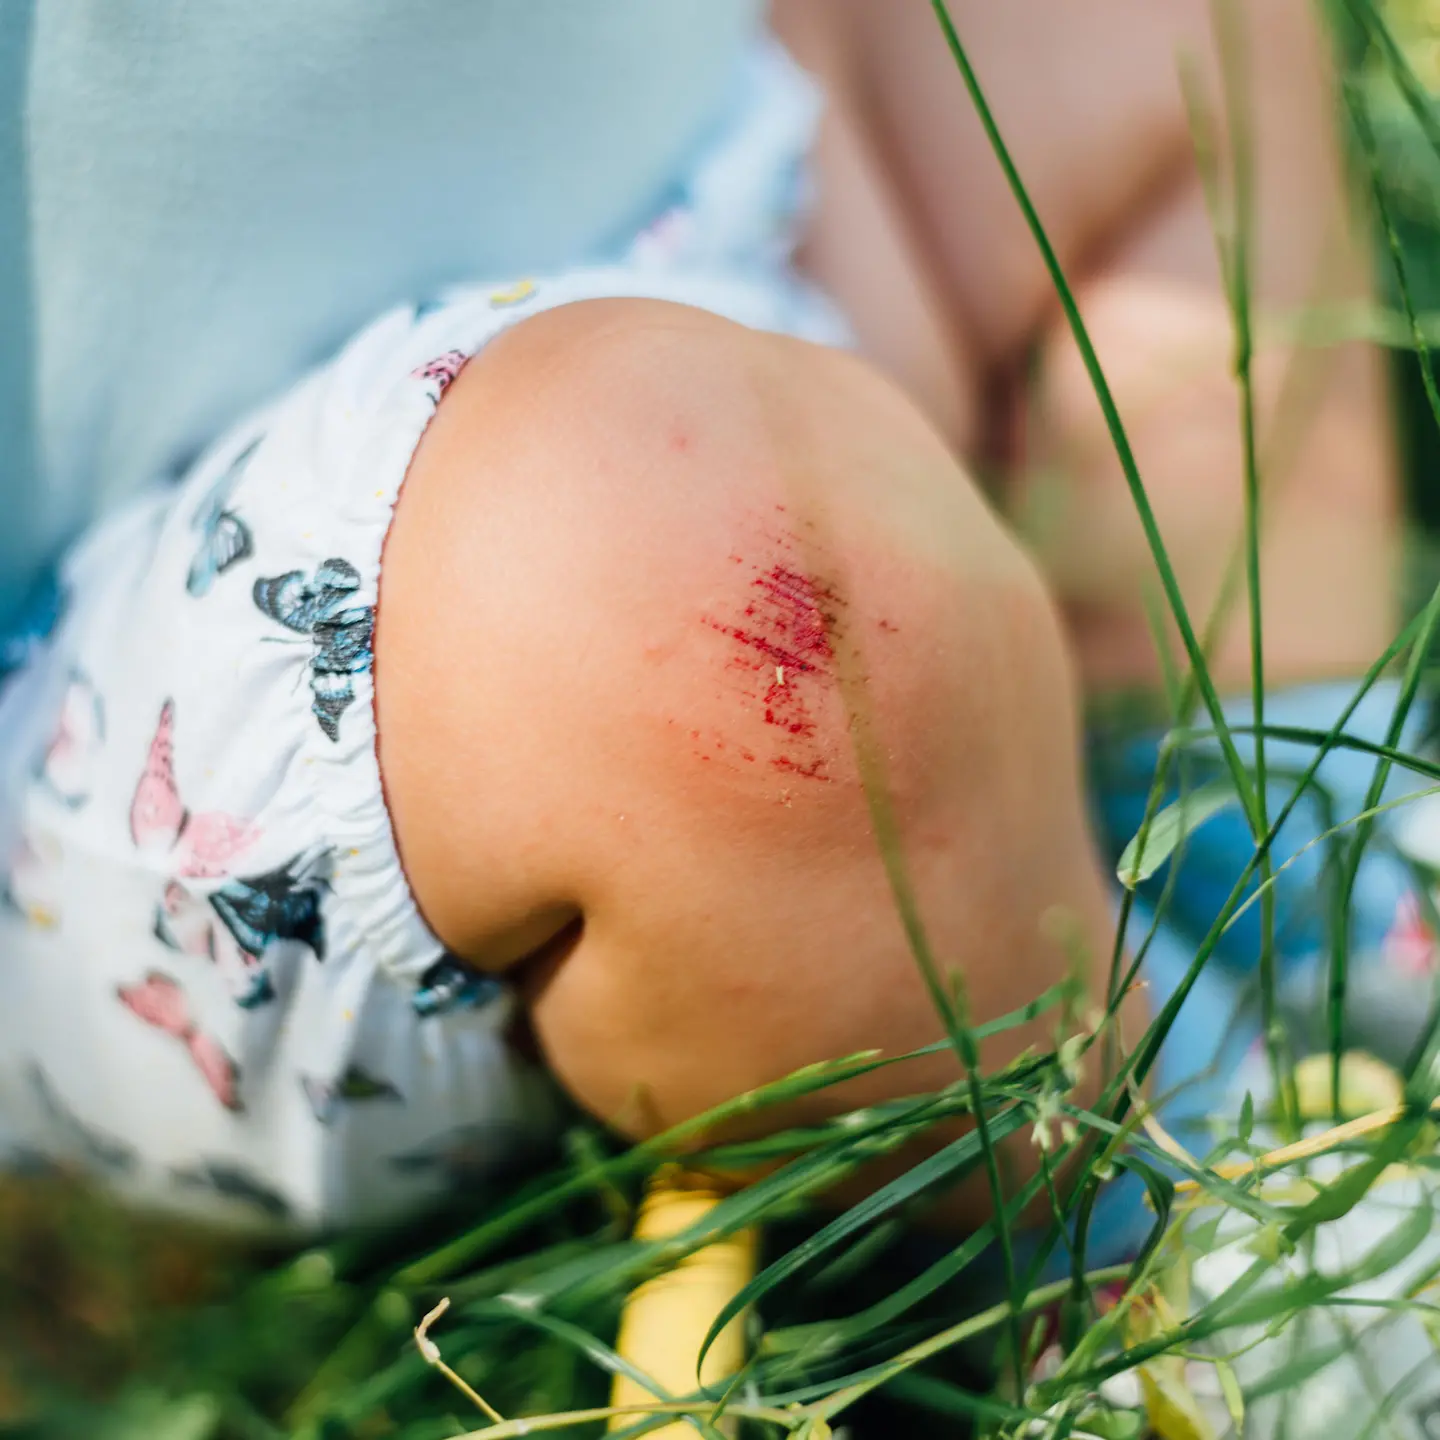 Ein Kind sitzt im Gras mit kurzer Hose. Sein Knie ist aufgeschürft und blutet.